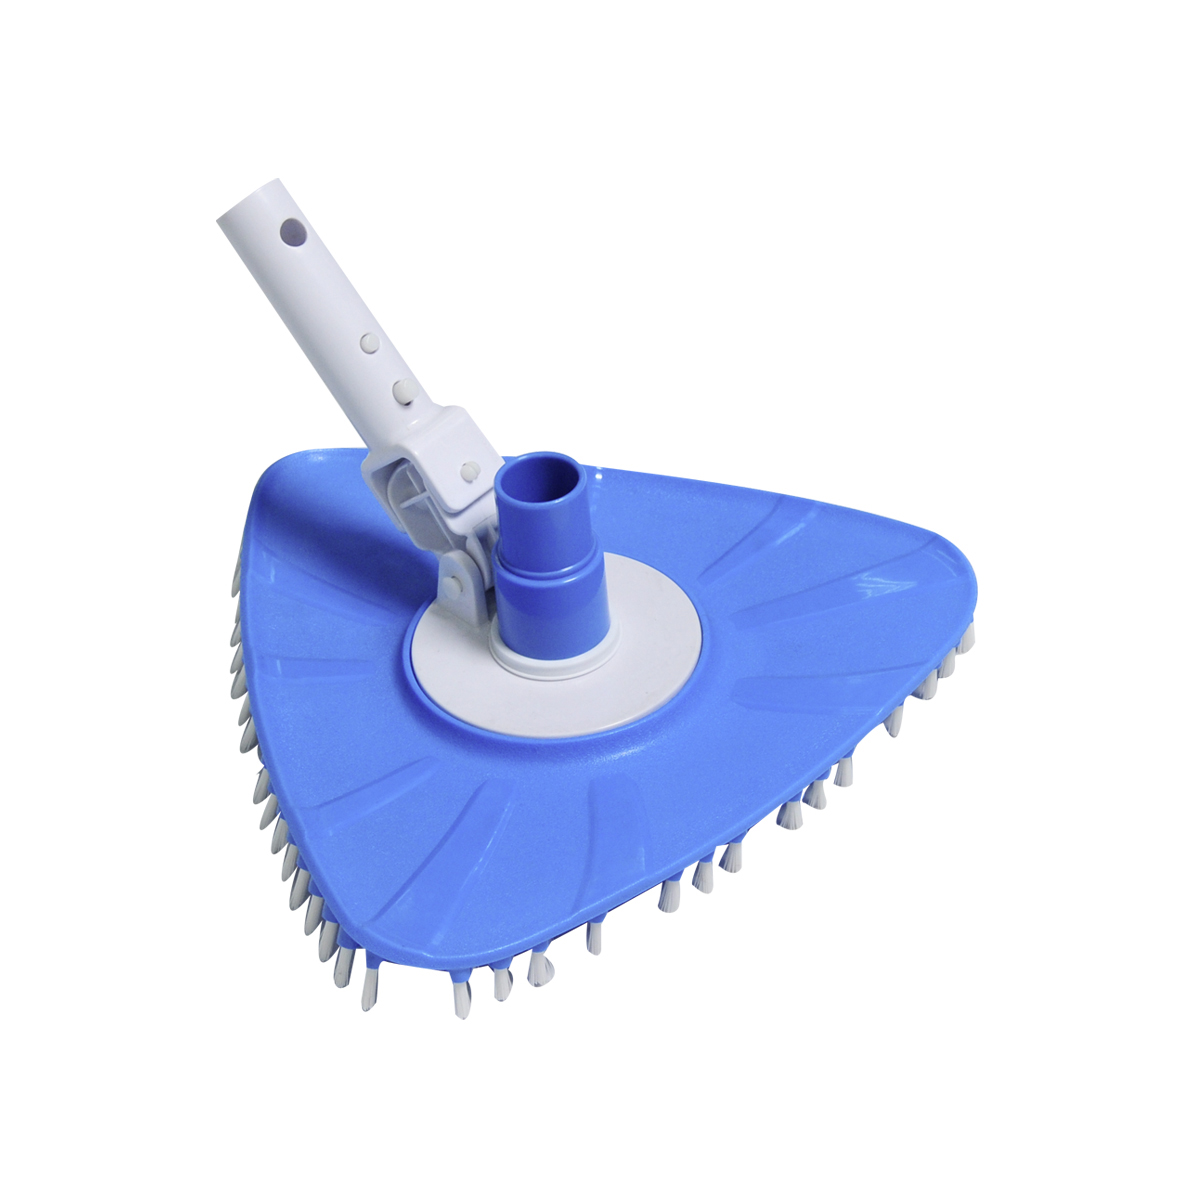 Smart Flex triangular vacuum cleaner, blue, individually packed Smart Flex triangular vacuum cleaner, blue, individually packed